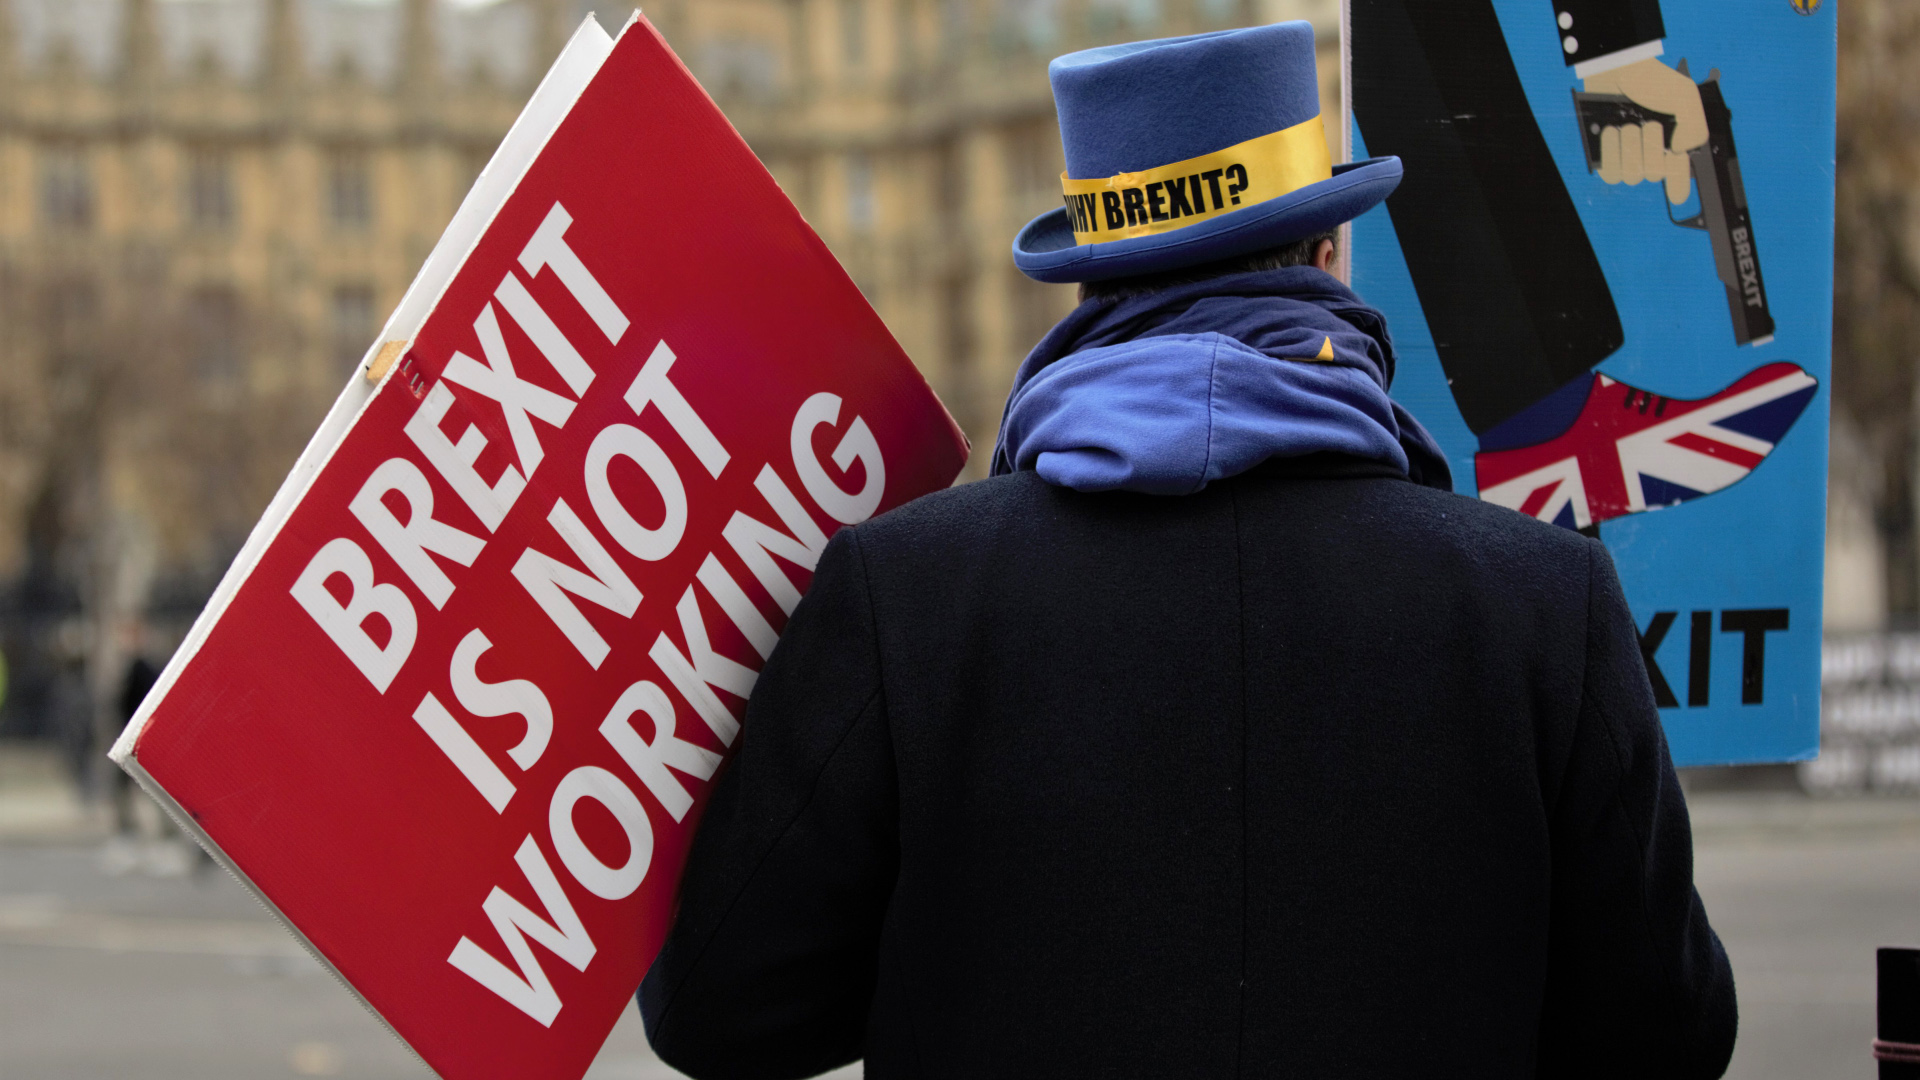 Ein Brexit-Gegner hält ein Plakat mit der Aufschrift "Brexit don't work" | dpa